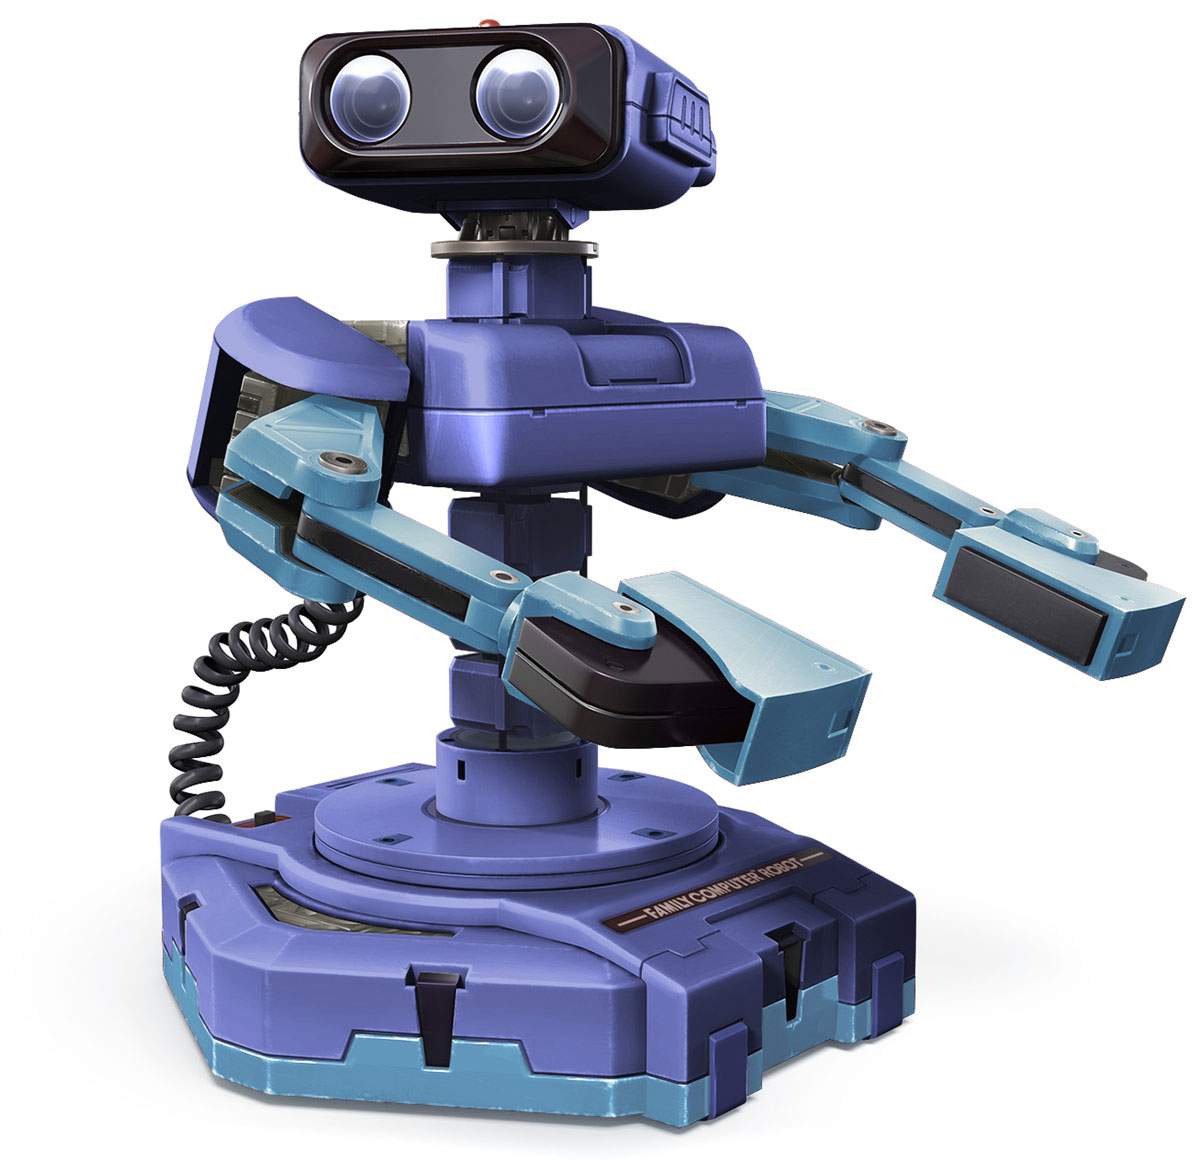 Rob the Robot Logo - Nintendo R.O.B. Robot - The Old Robots Web Site